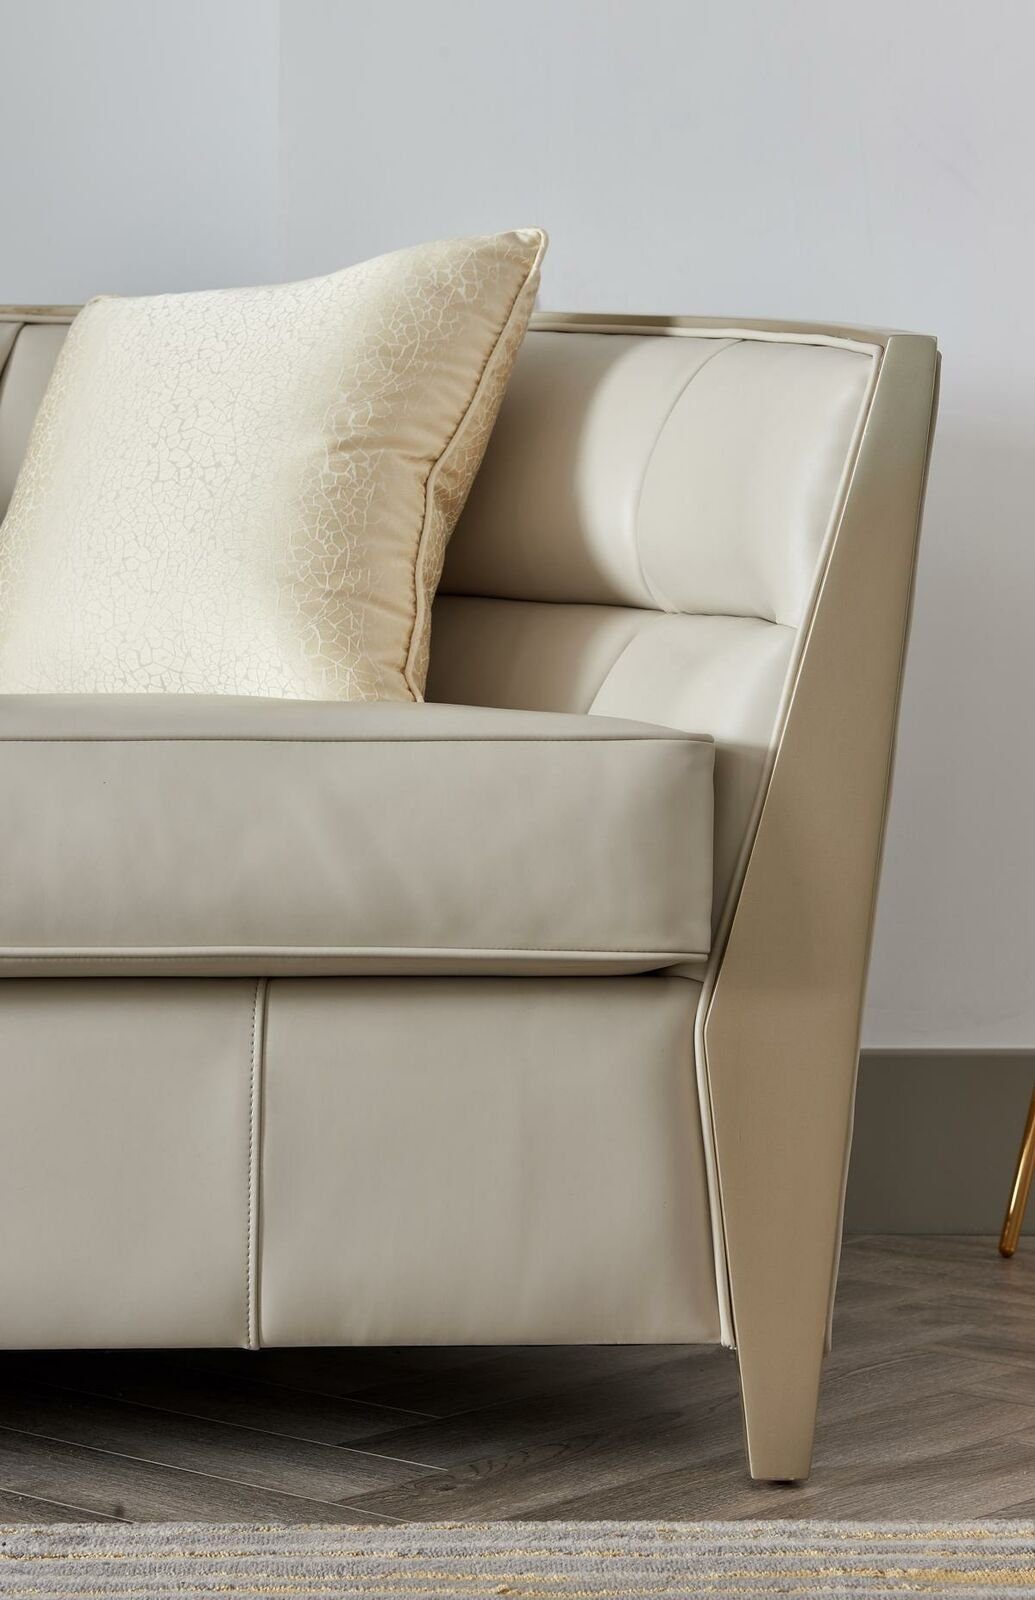 Luxus Made Polstermöbel, in Sofa 4+1 Wohnzimmer Sofagarnitur Europe JVmoebel Sitzer